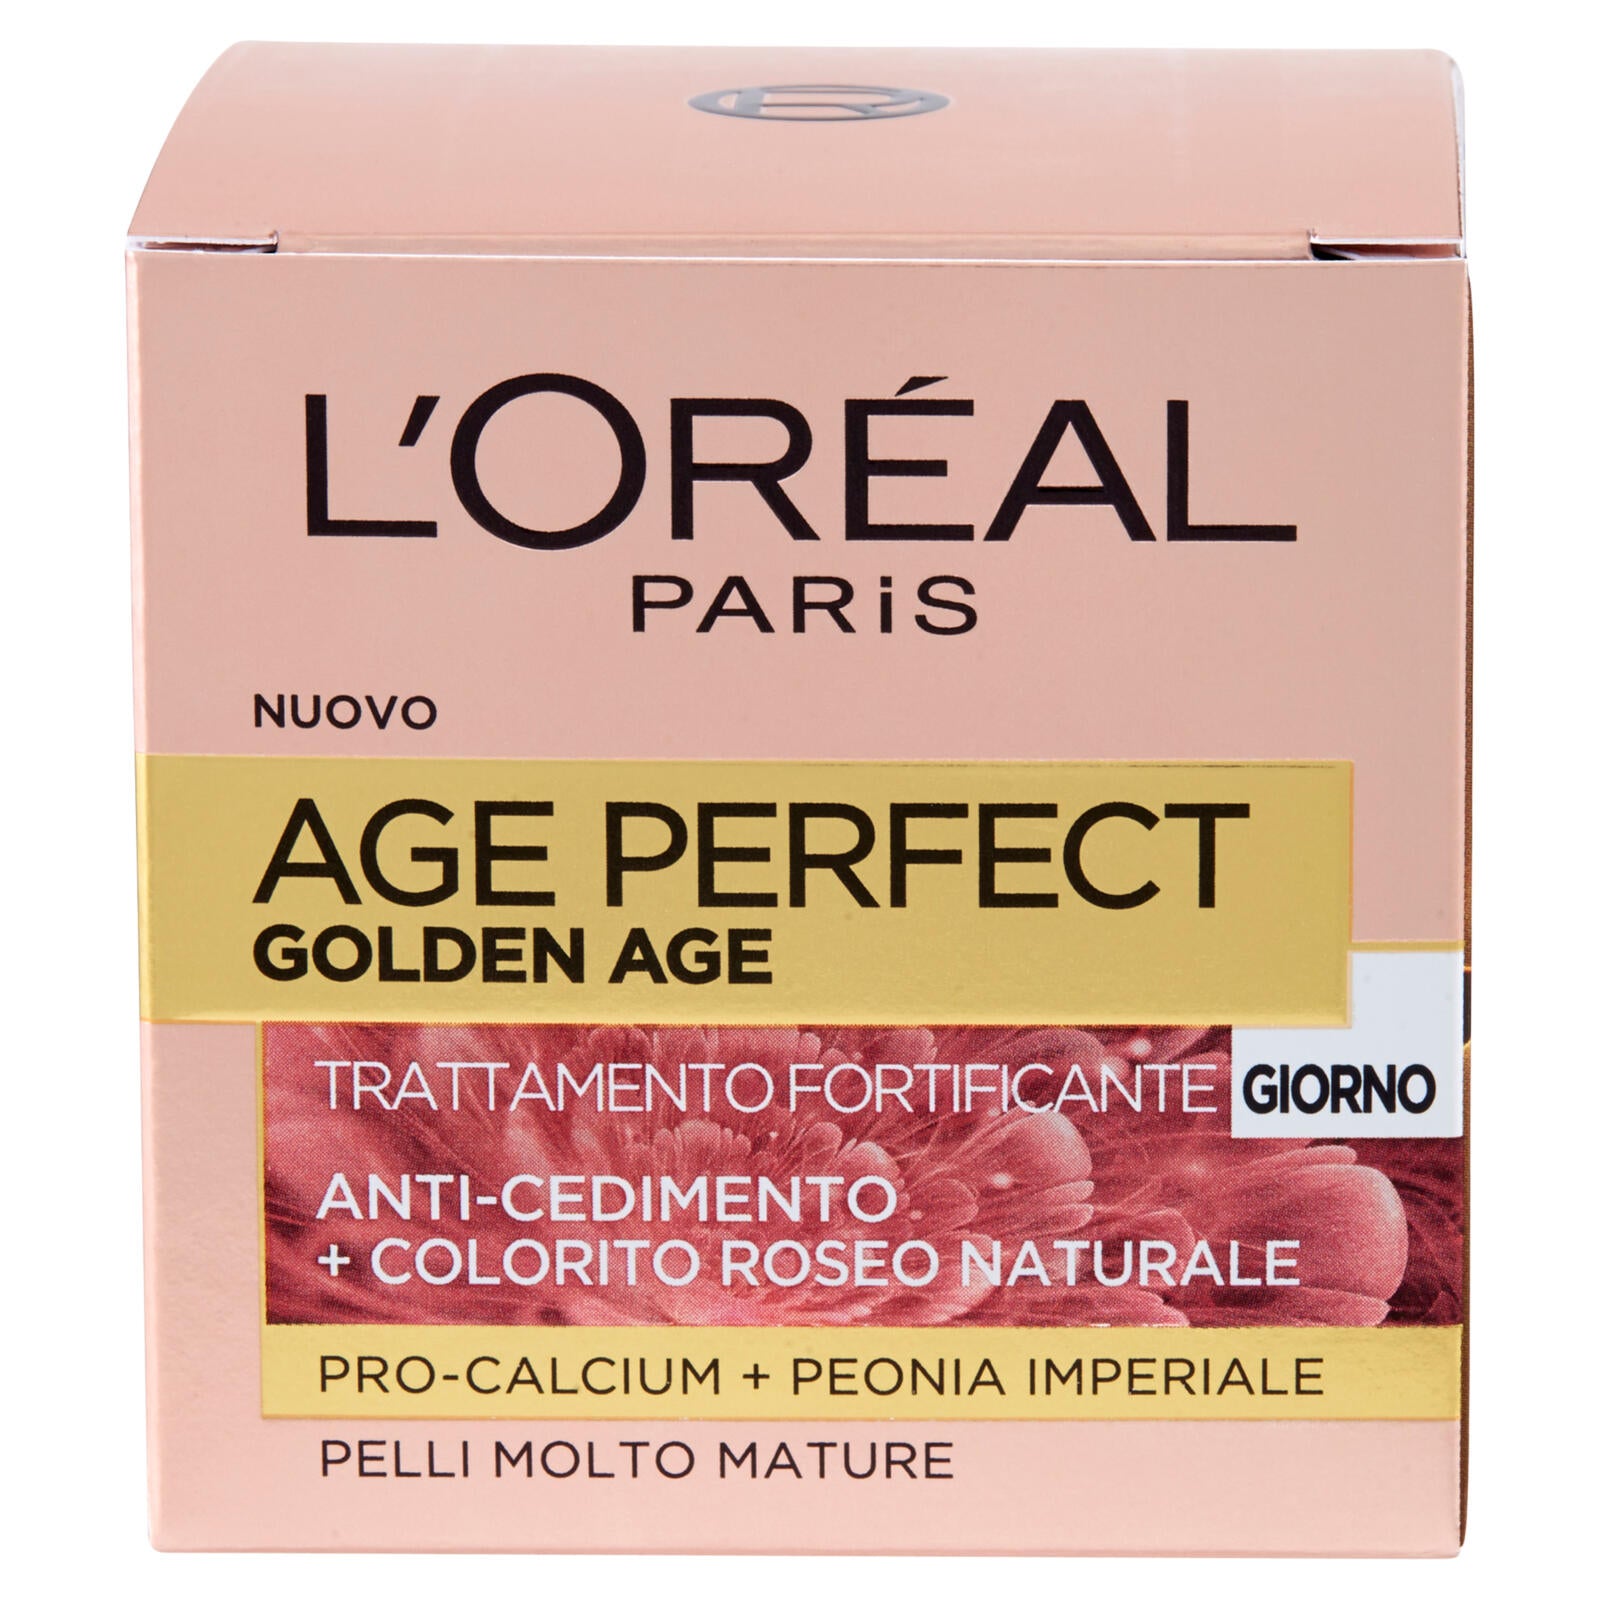 L'Oréal Paris Age Perfect Golden Age Trattamento Fortificante Giorno Pelli Molto Mature 50 ml